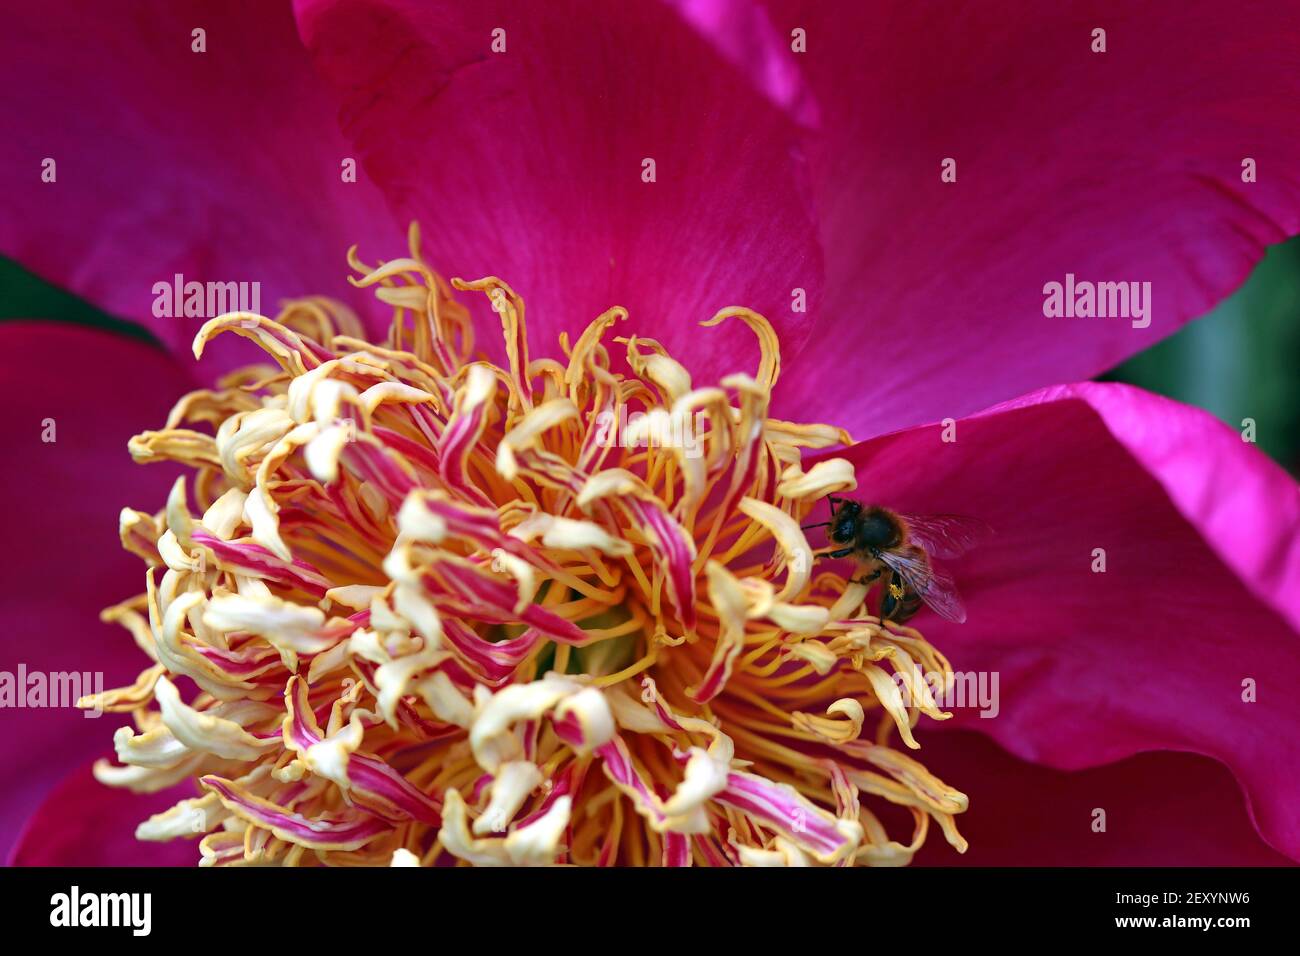 Photo macro de pivoine herbacée magenta vif avec spirale comme des étamines jaune-rose; une abeille recueille le pollen des étamines. Famille des paeoniaceae Banque D'Images